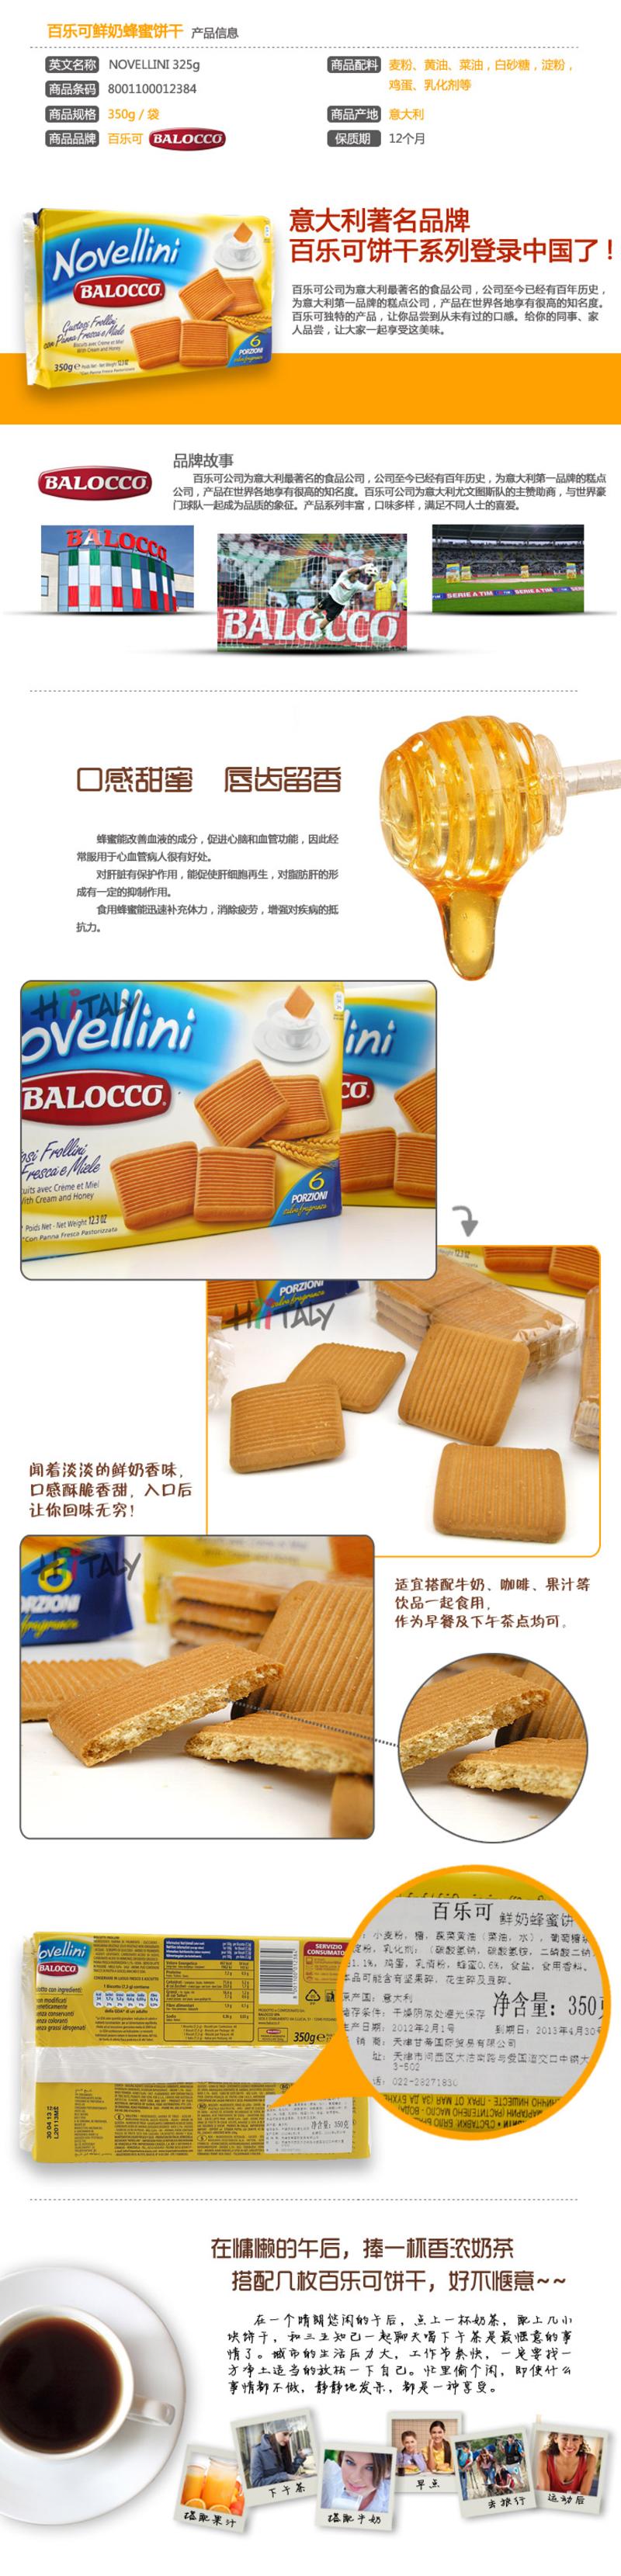 【淘最意大利】百乐可 Balocco 鲜奶蜂蜜饼干350g ×2包 意大利进口